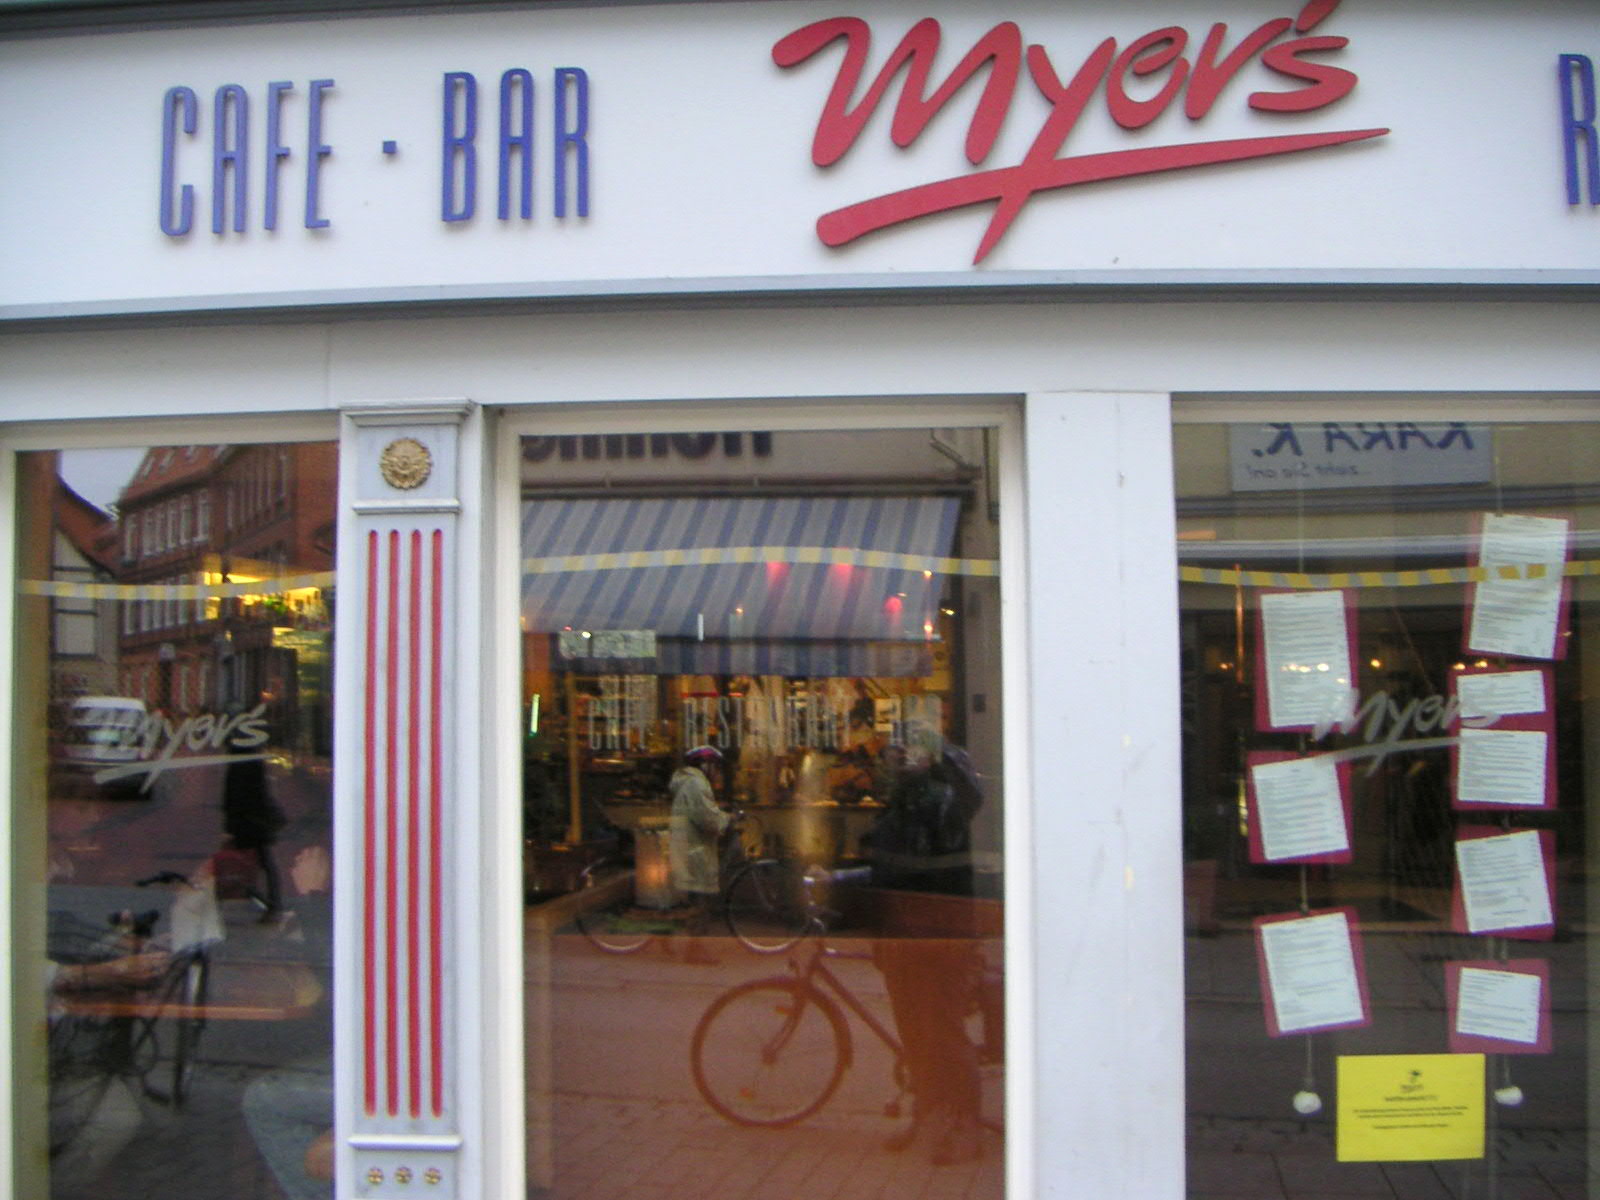 Cafe-Restaurant-Bar Myer's, Lange-Geismar-Straße